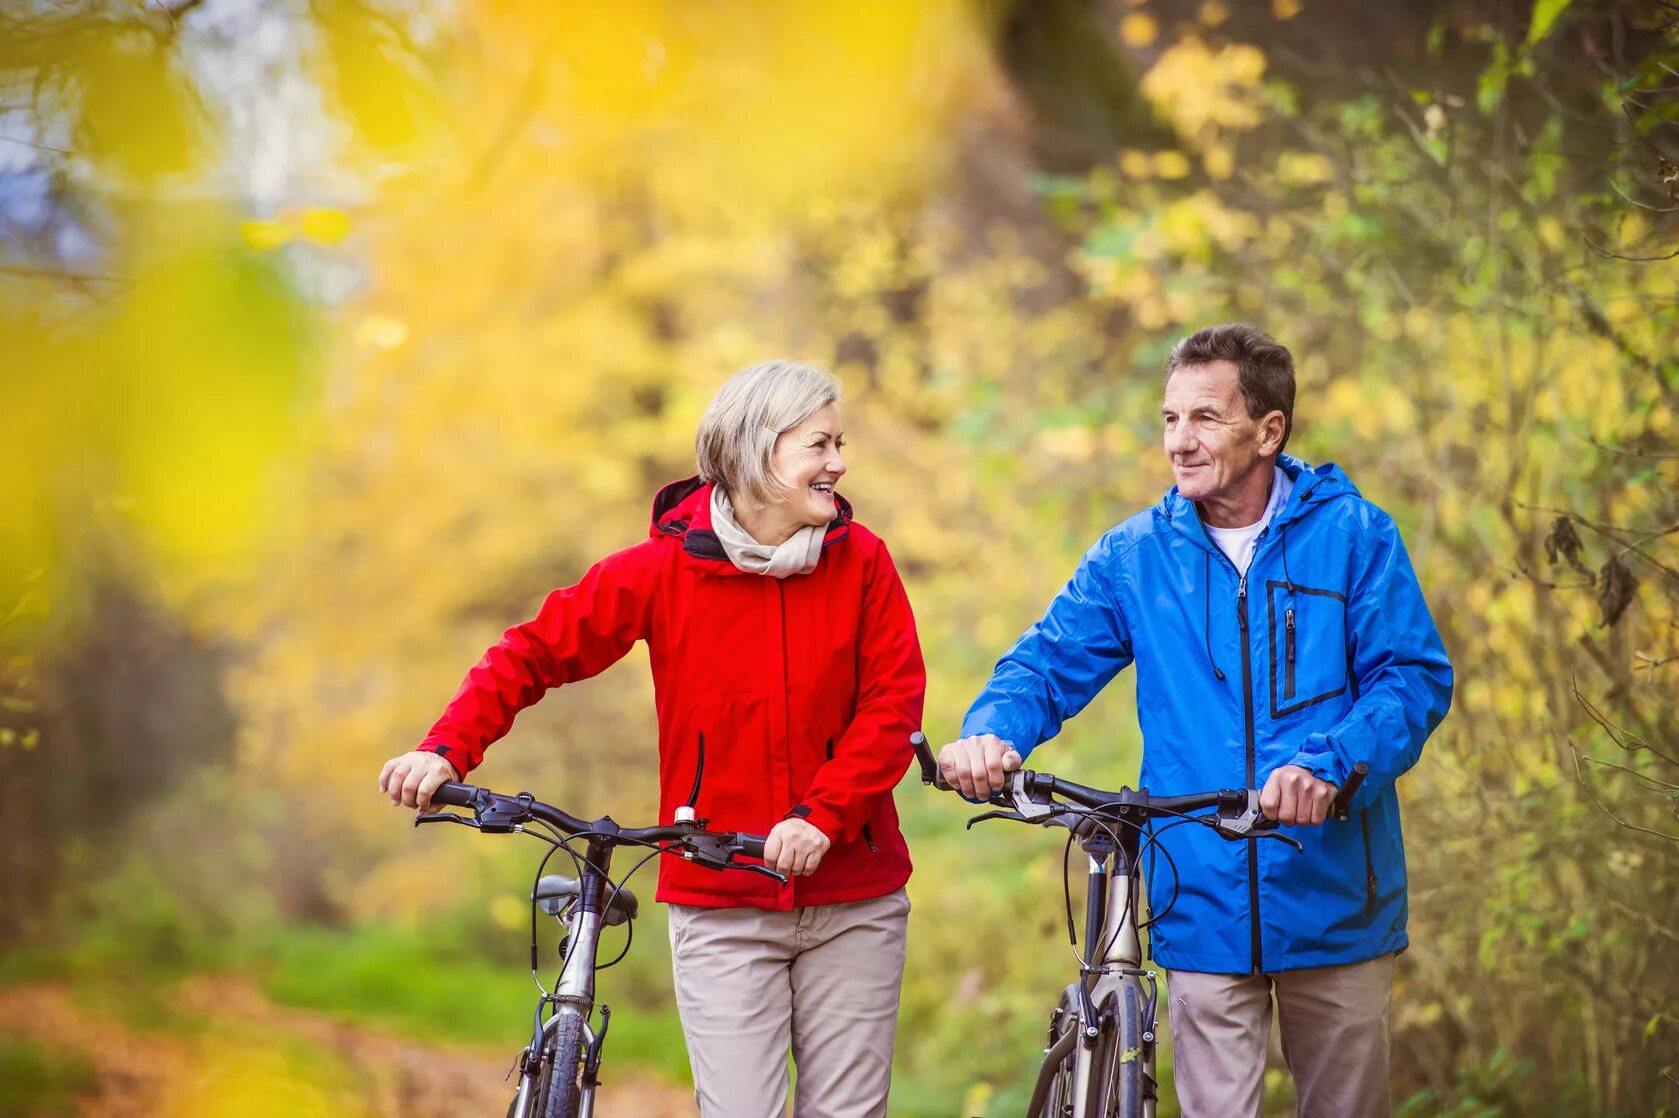 Дорога пенсионерам. Прогулка пожилых. Пожилая пара на велосипедах. Прогулки на свежем воздухе. Велосипед для пенсионеров.